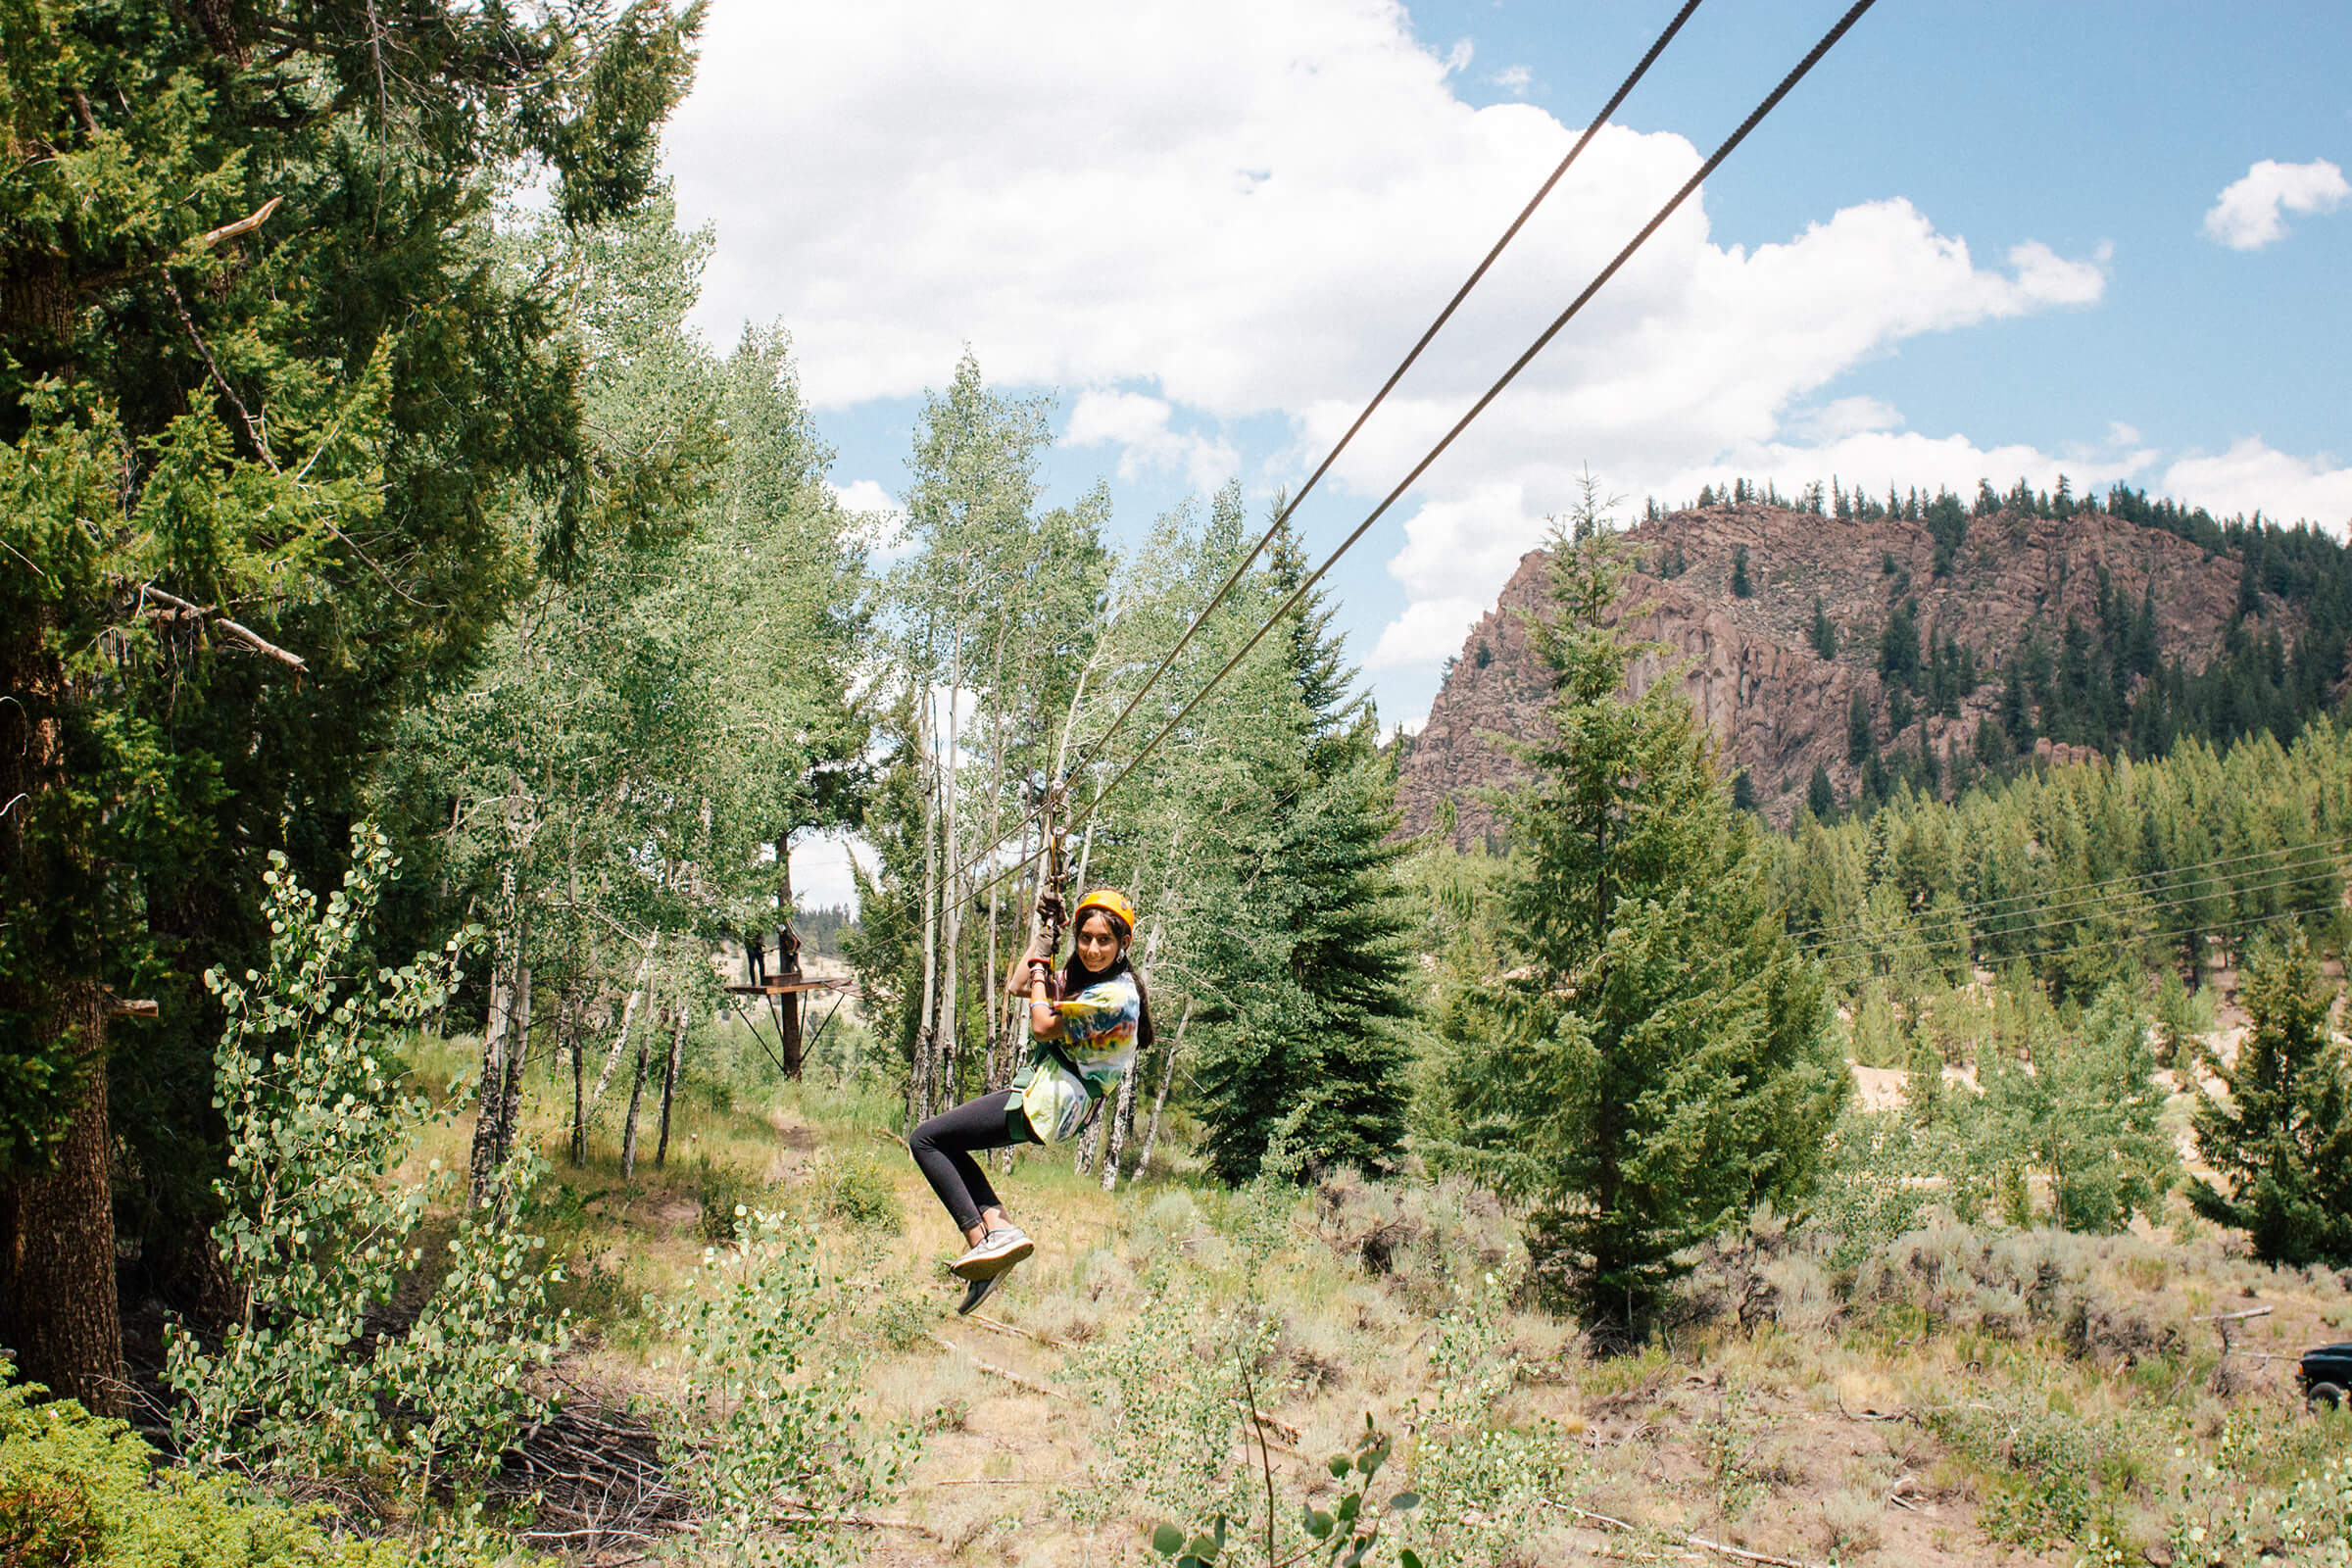 Ziplining in Colorado